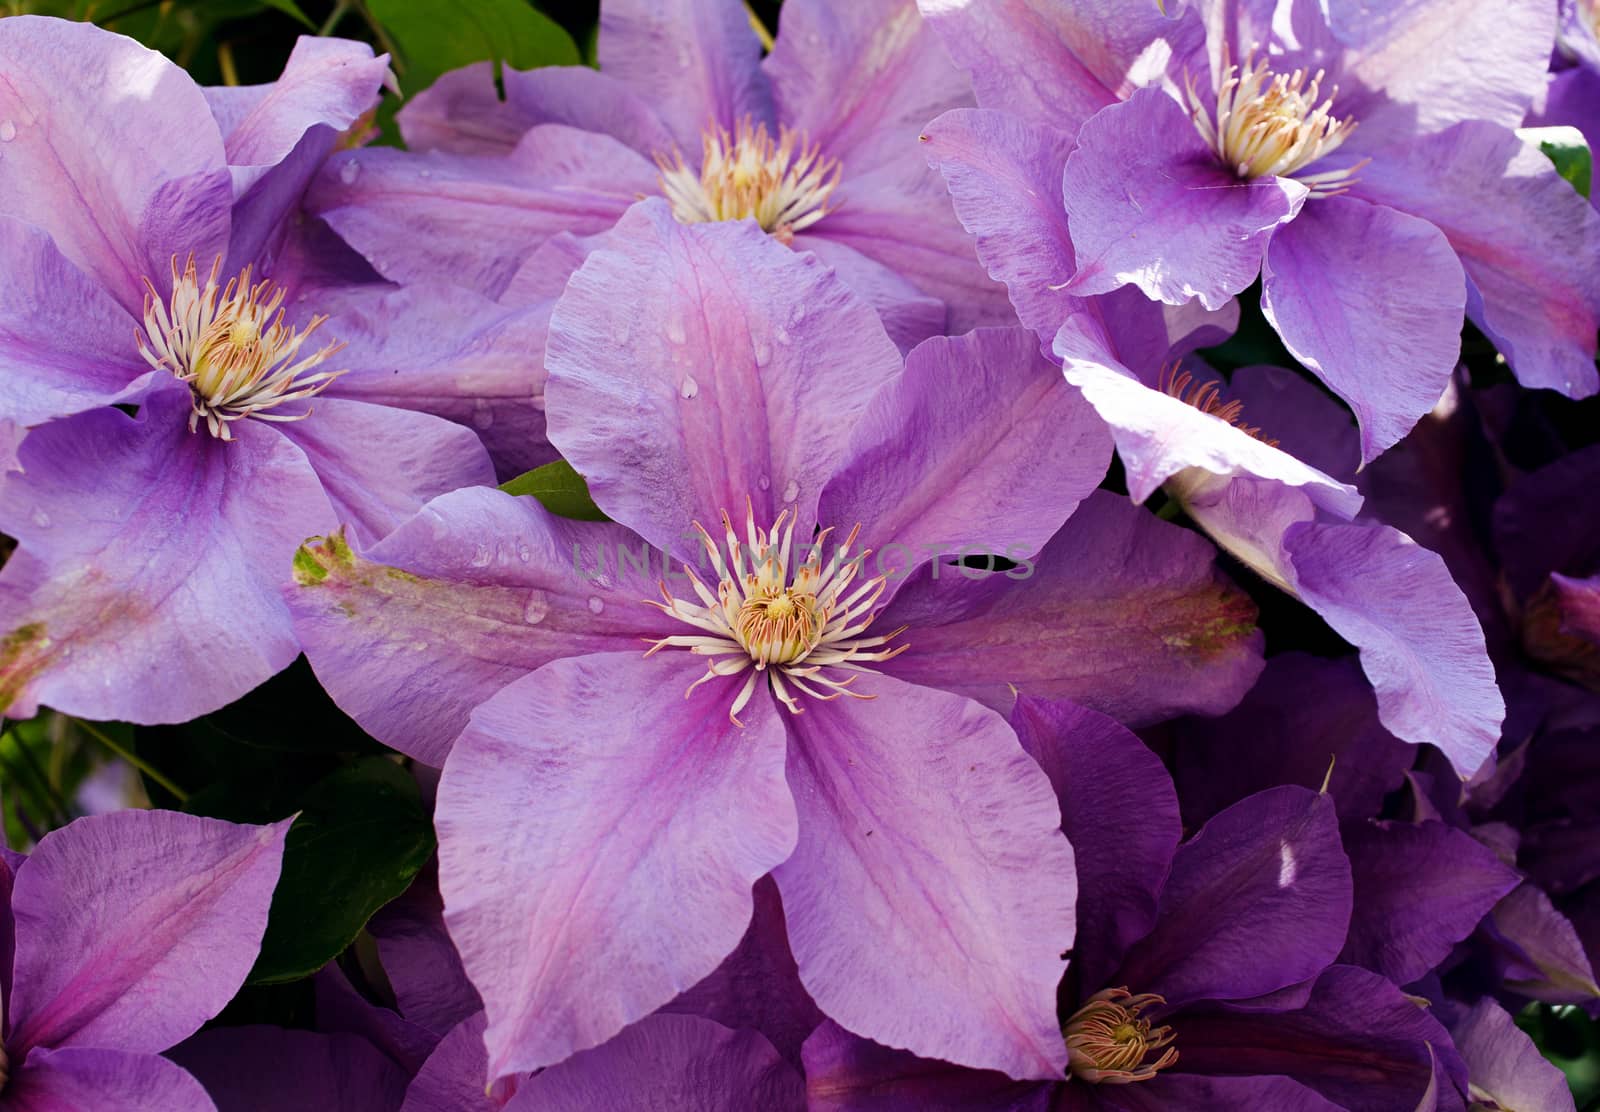 purple flowers with dew drops by serkucher